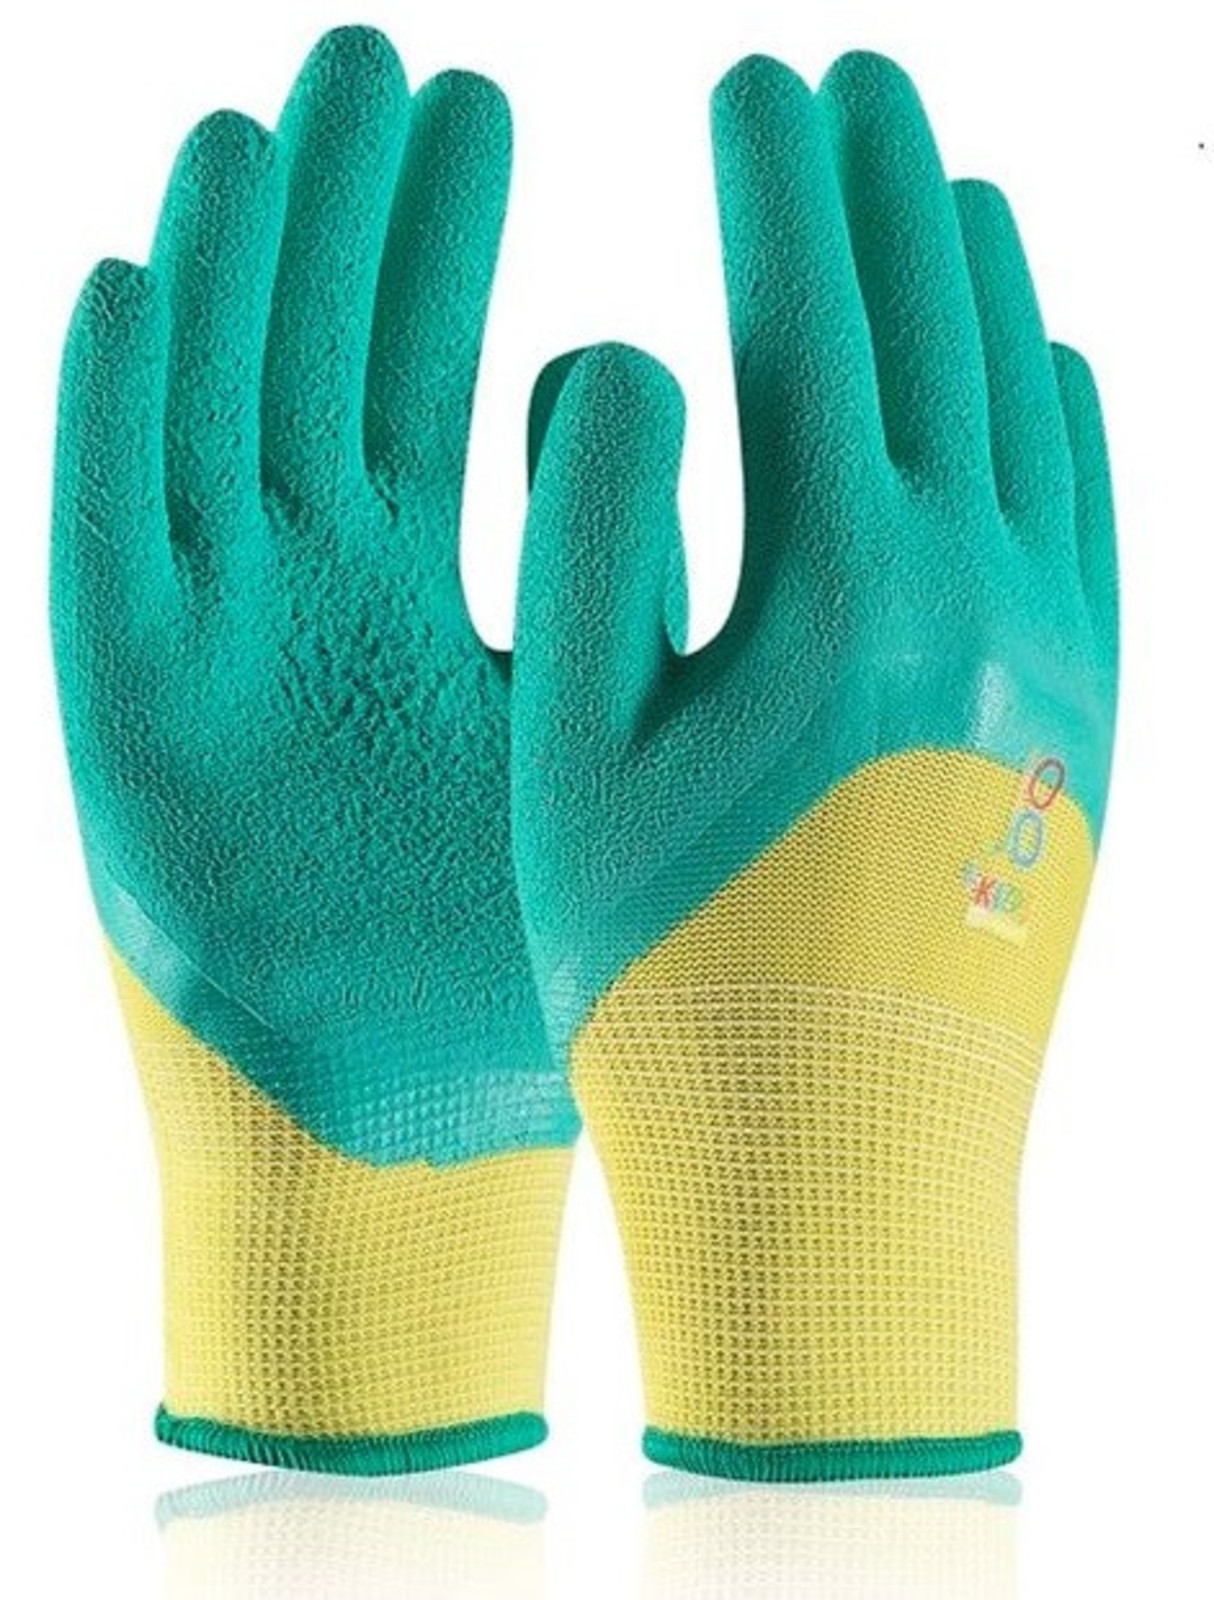 Detské pracovné rukavice Ardon Jojo - veľkosť: 5-7 rokov, farba: zelená/žltá